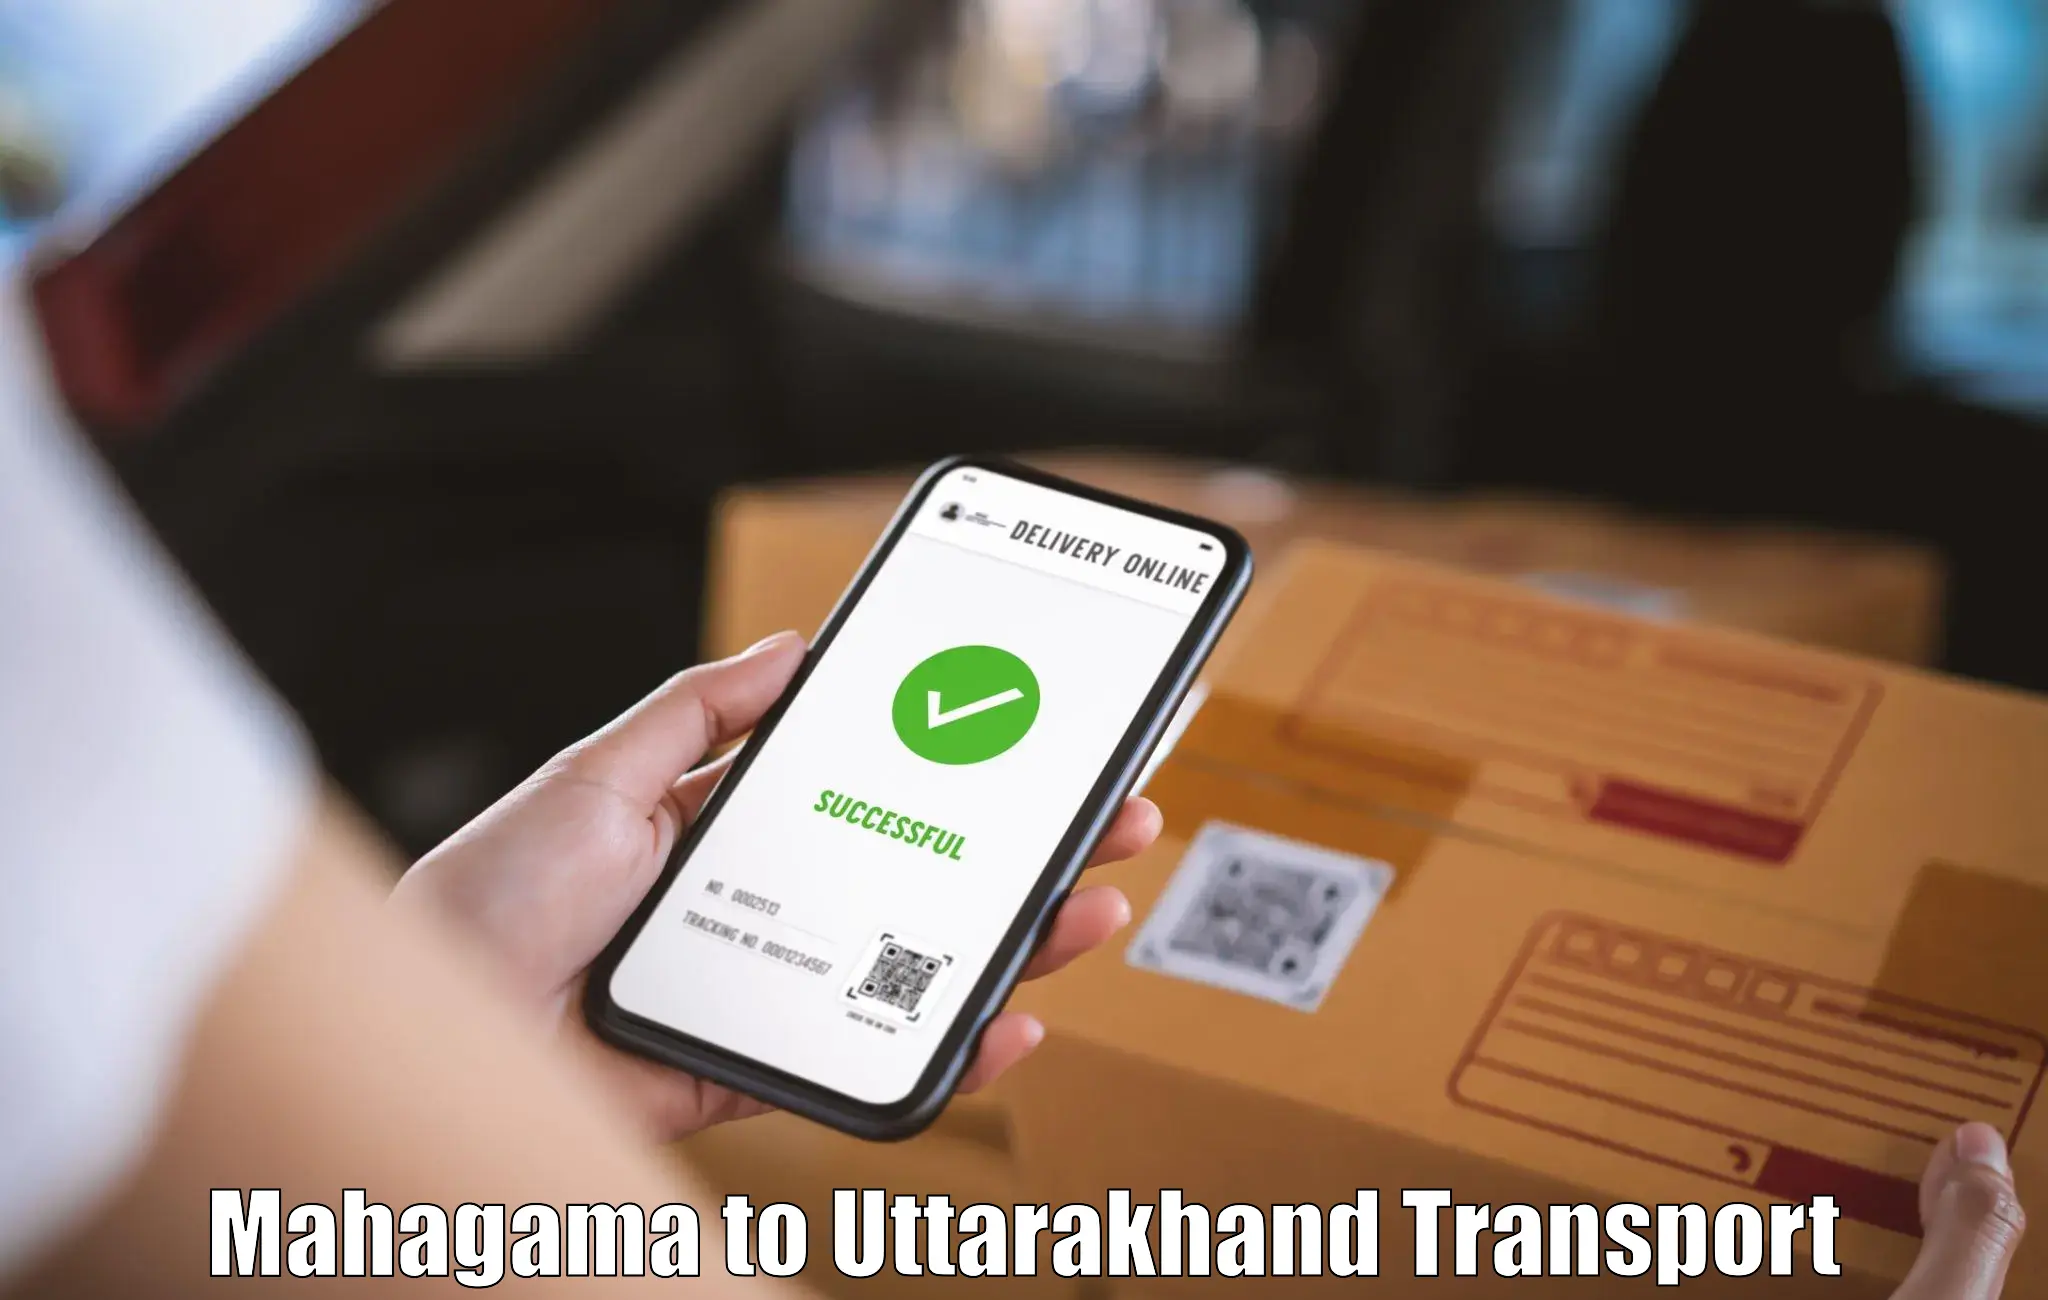 Nationwide transport services Mahagama to Uttarakhand